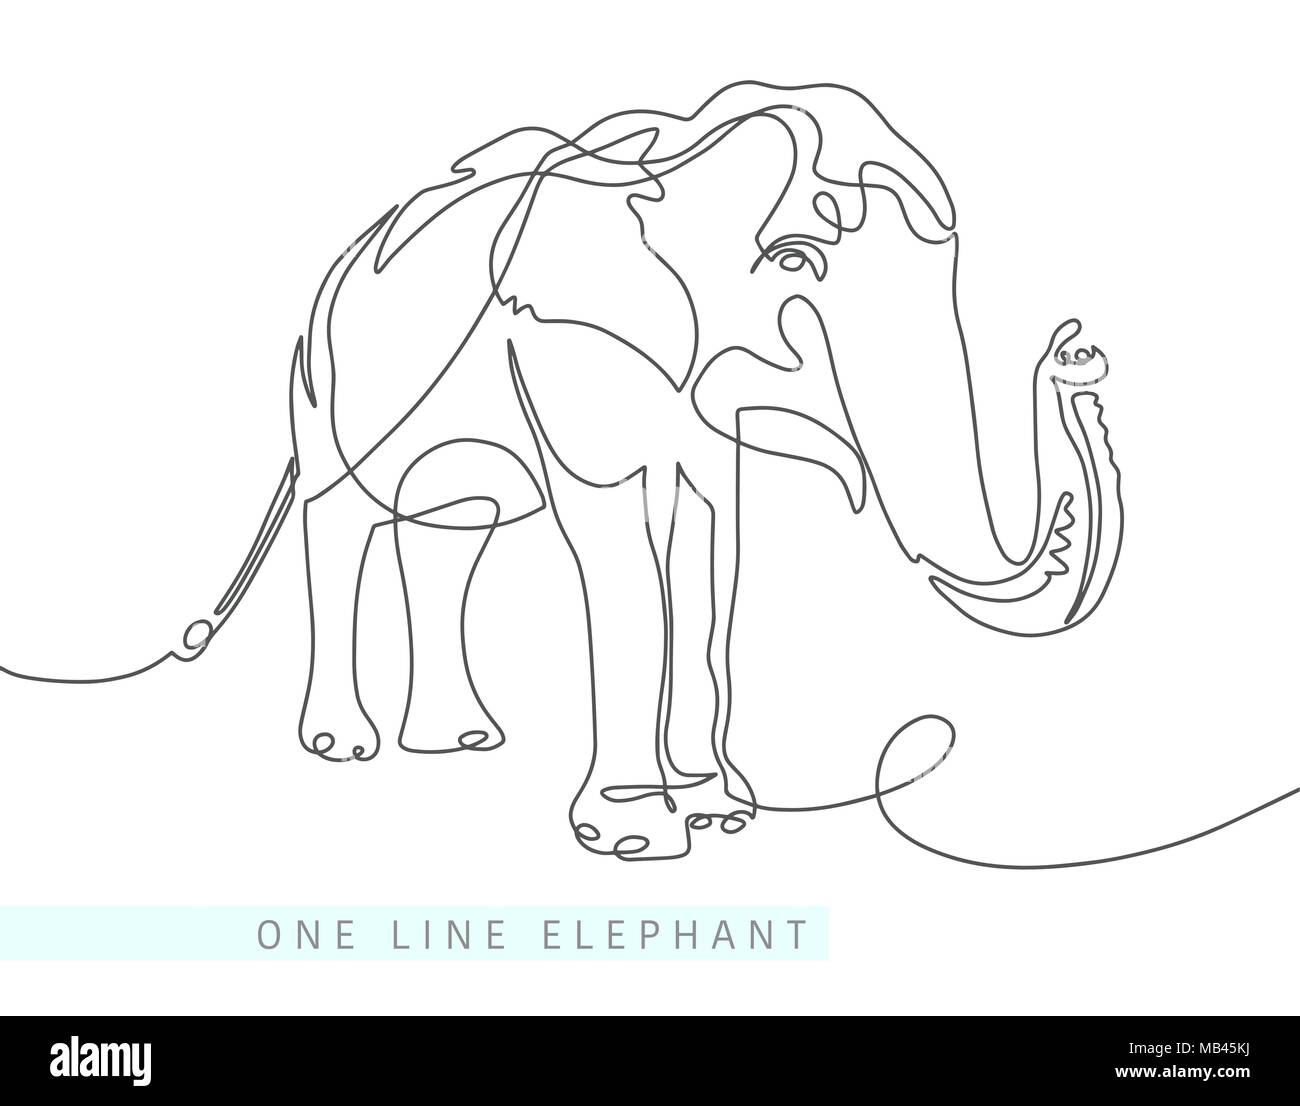 Une ligne continue de dessin de l'éléphant indien Illustration de Vecteur